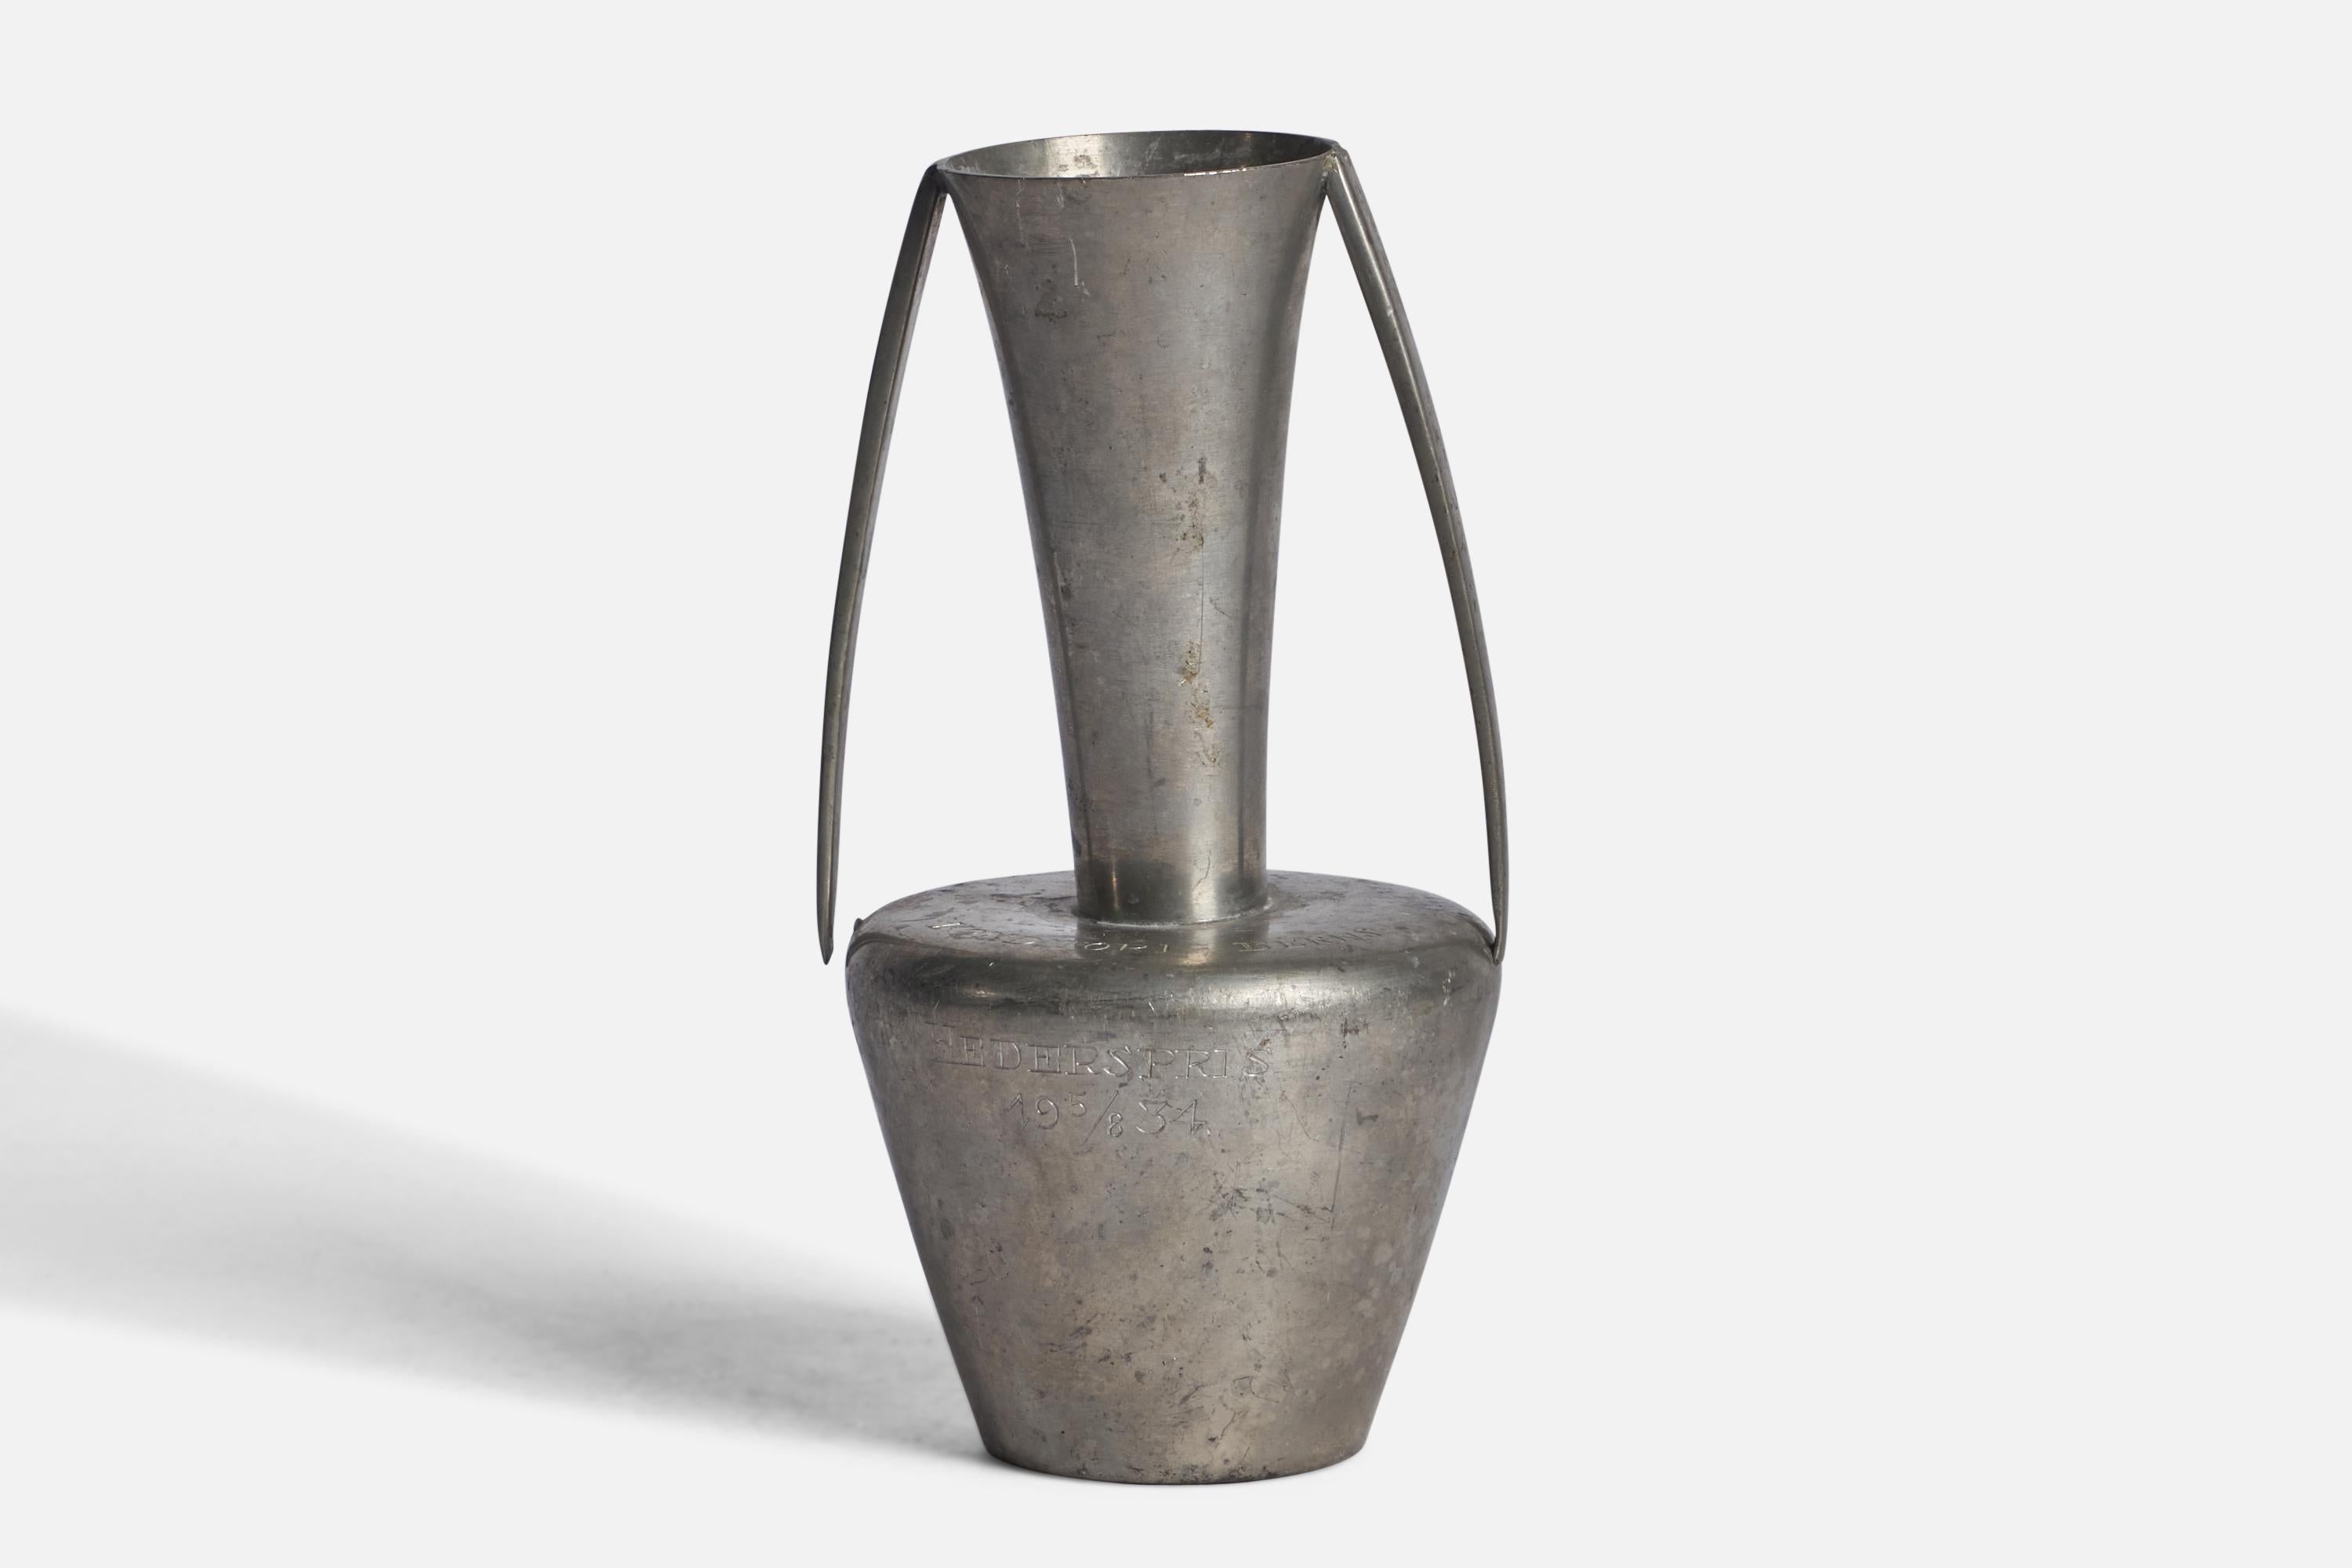 A pewter vase designed and produced by GAB Guldsmedsaktiebolaget, Sweden, 1934.